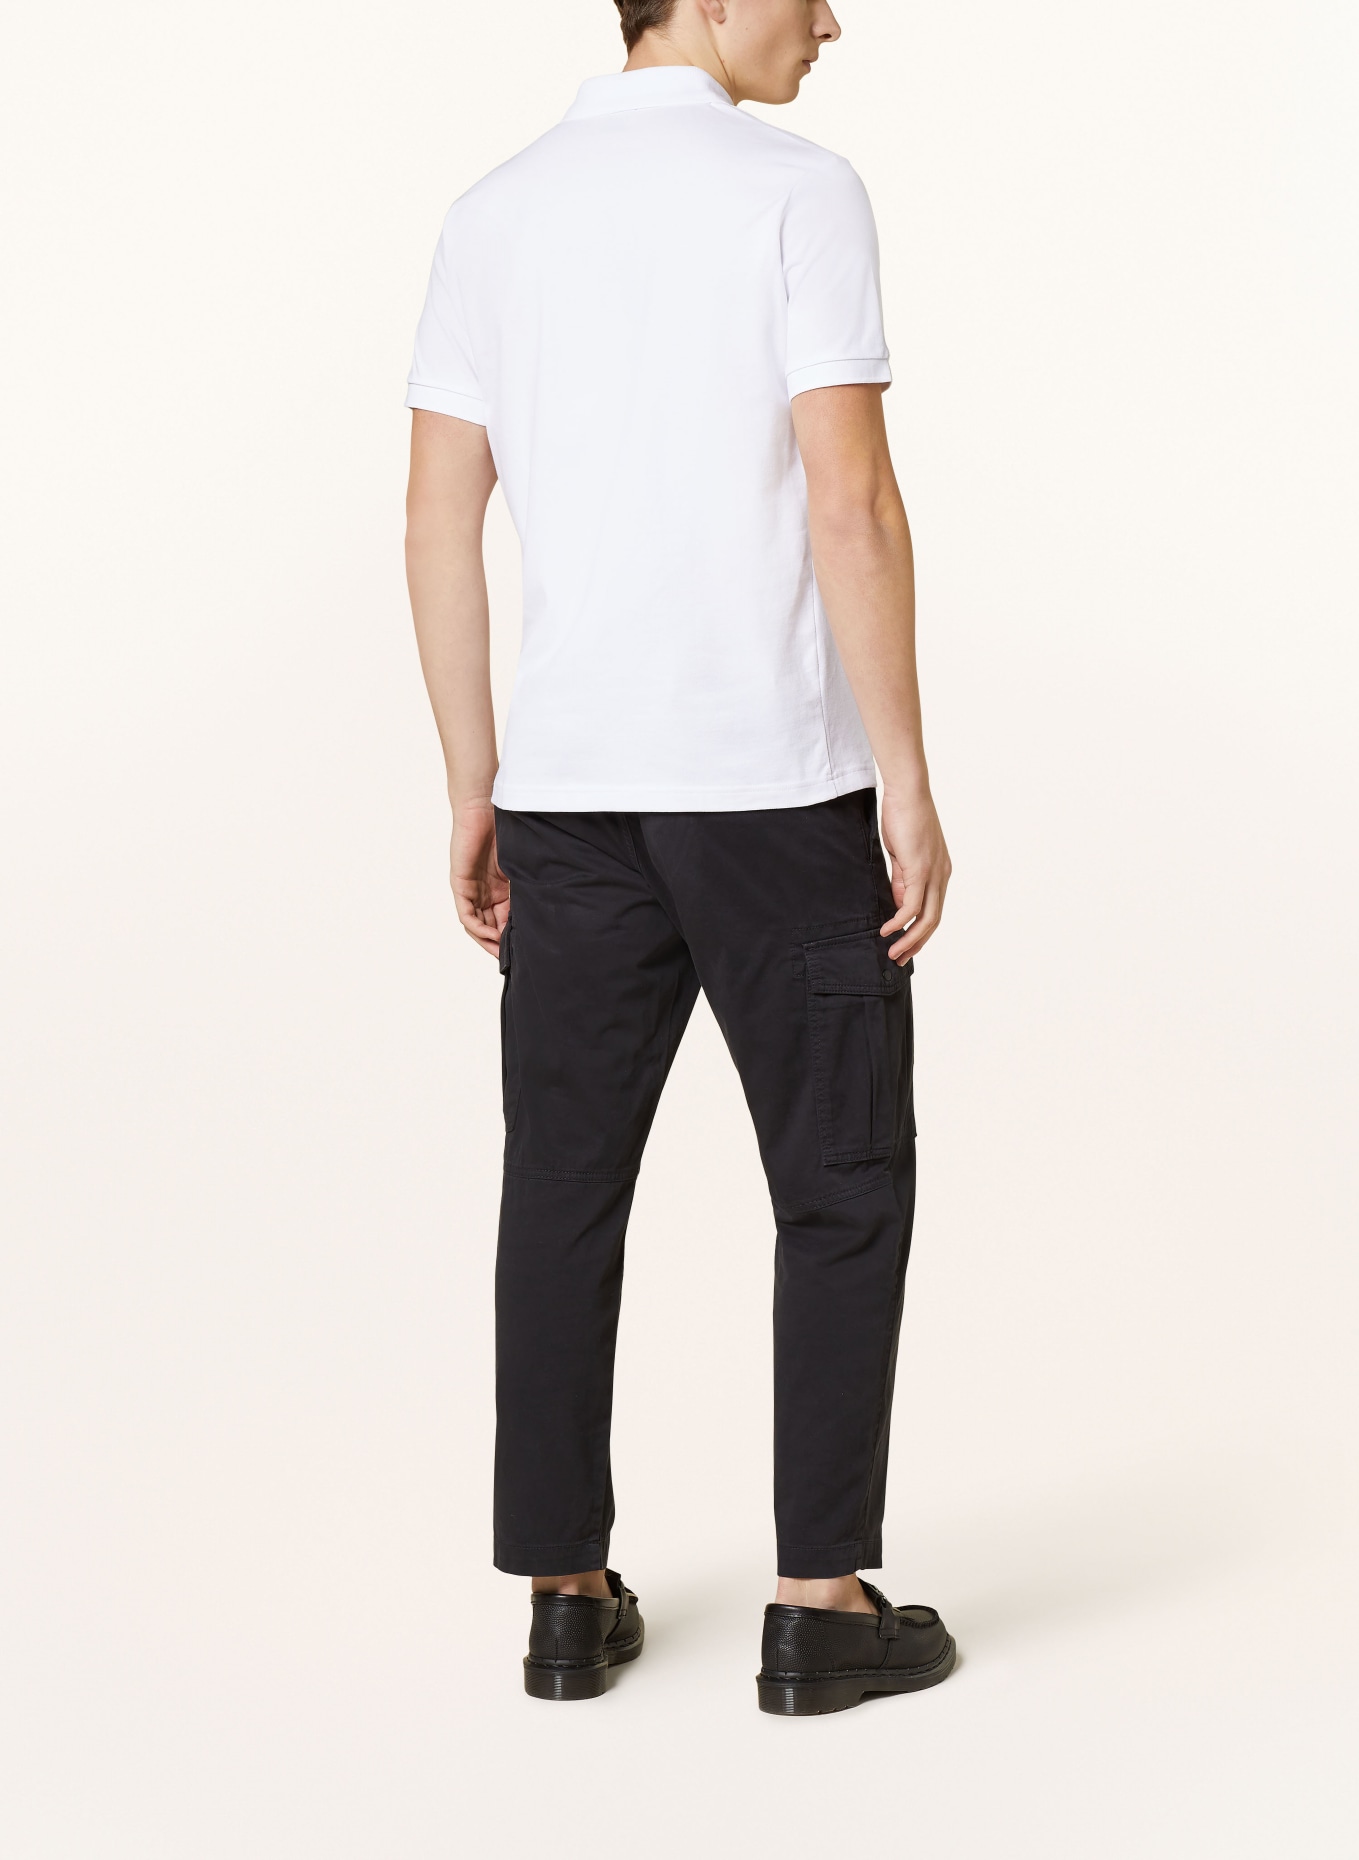 BOSS Piqué-Poloshirt PASSENGER Slim Fit, Farbe: WEISS (Bild 3)